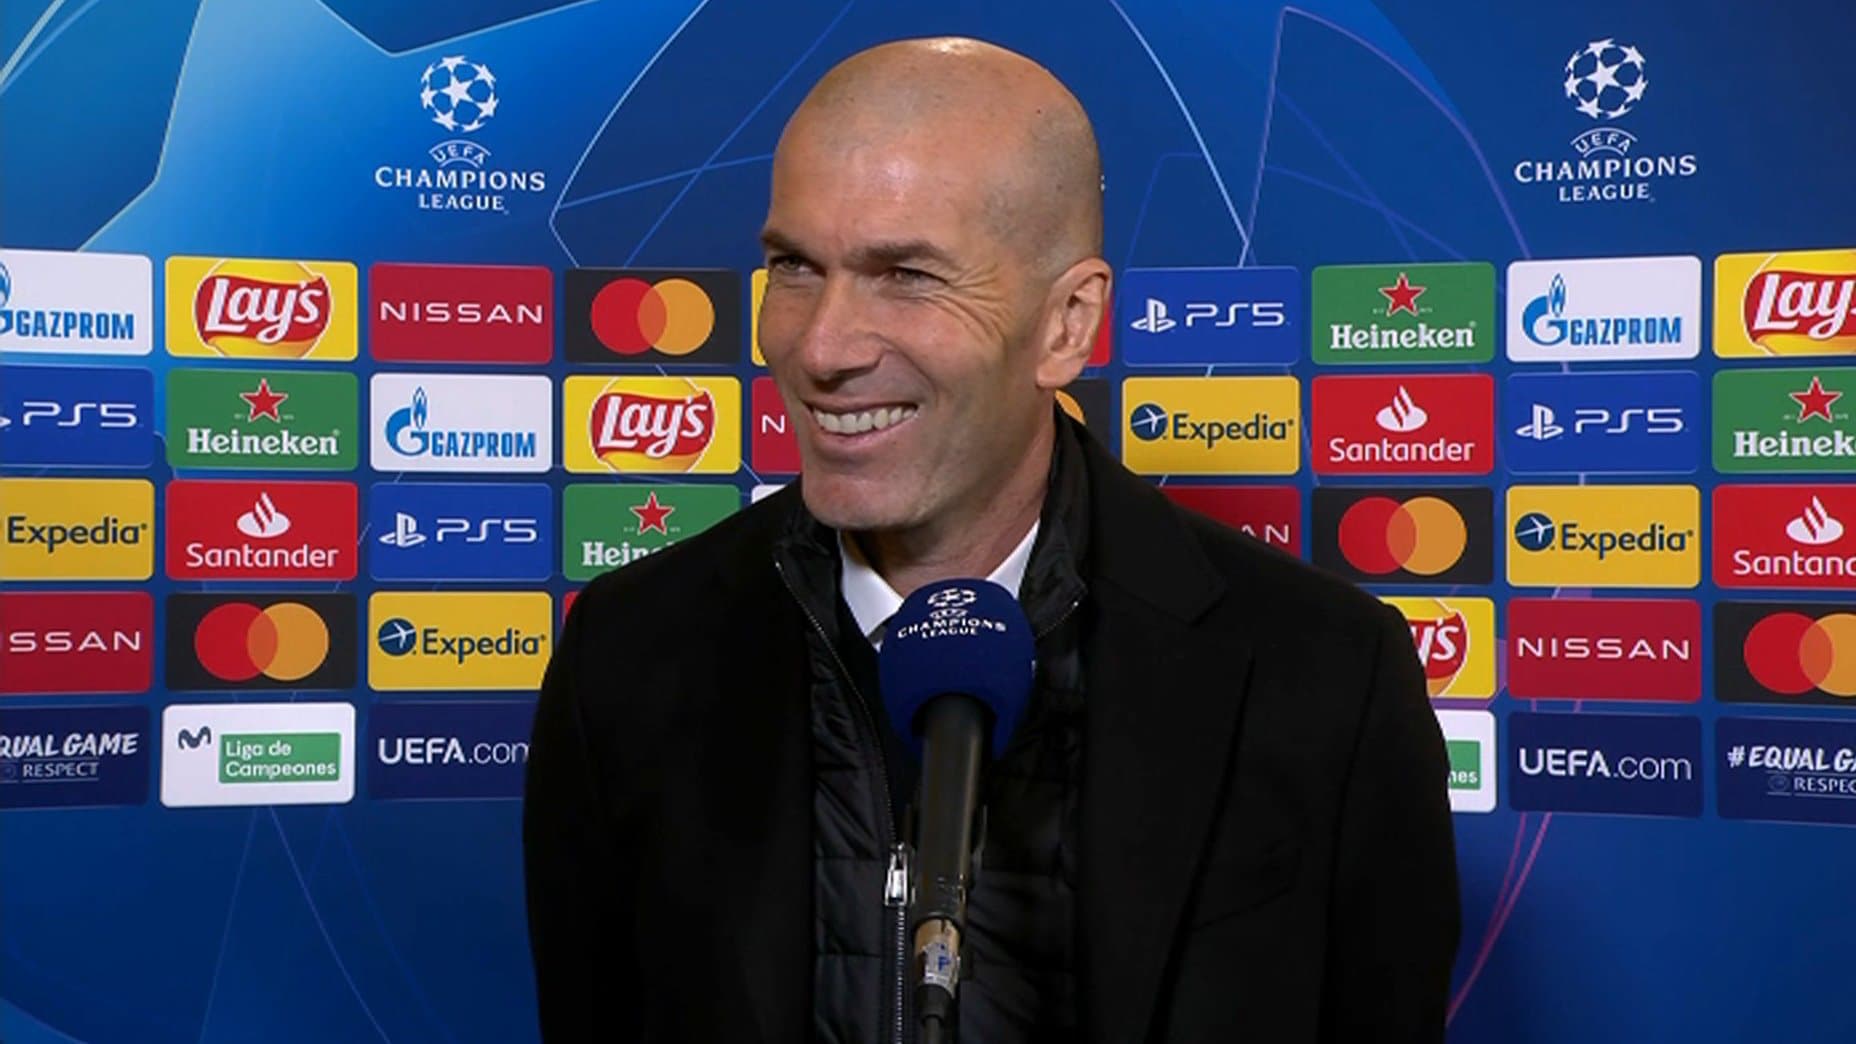 Un cador européen fait une offre concrète à Zidane, ce n’est pas Man United (Mundo Deportivo)